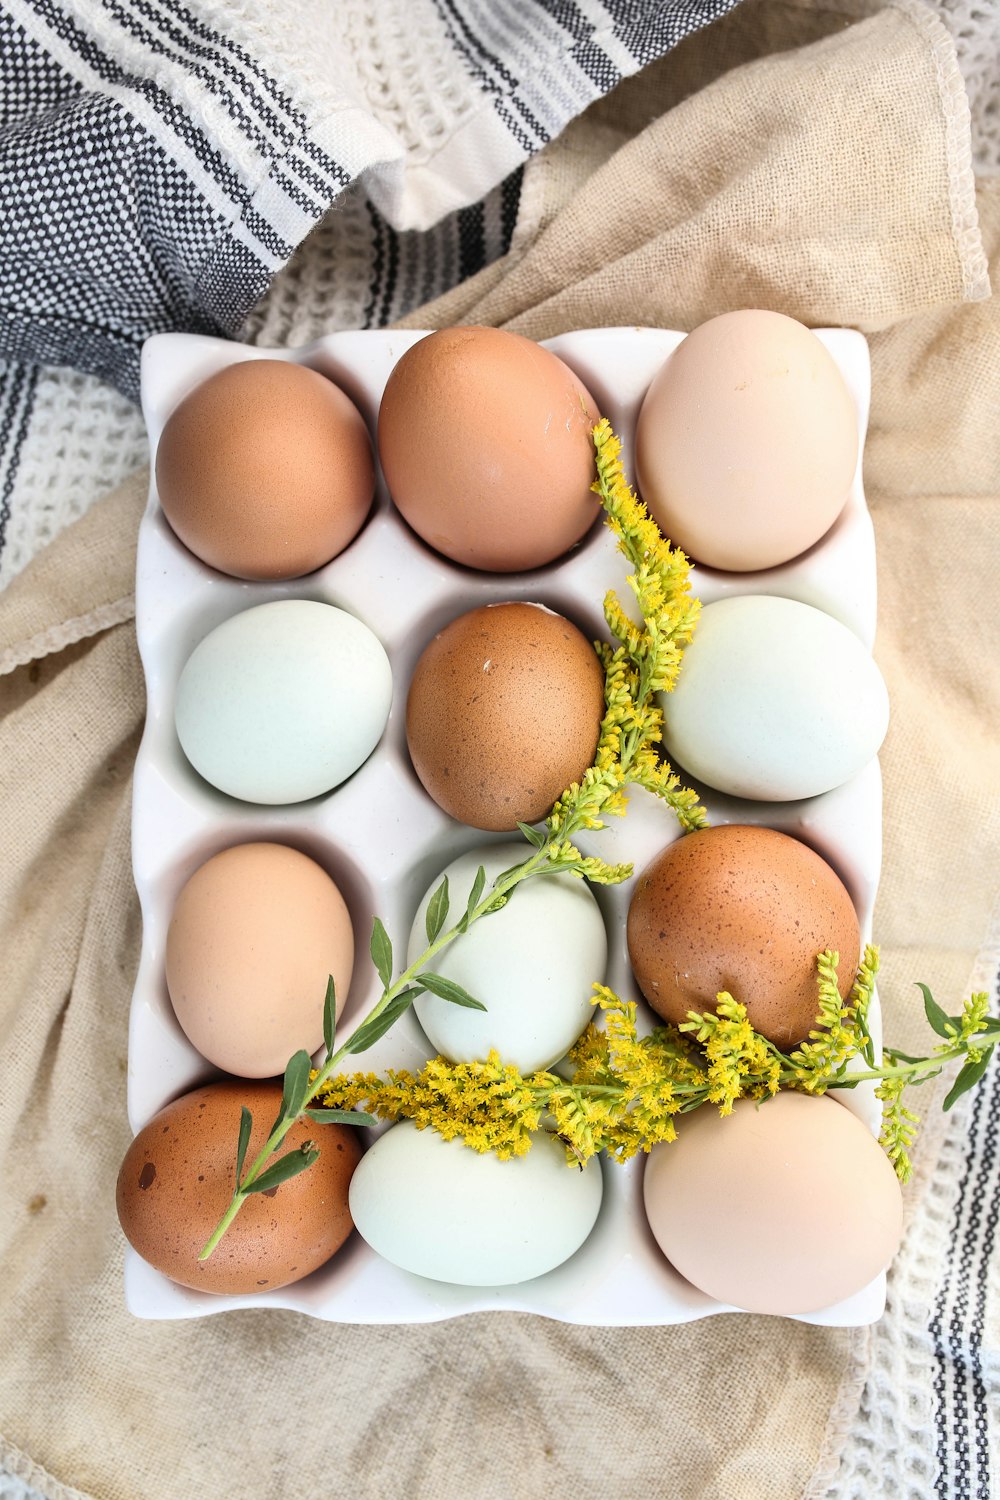 갈색 계란 쟁반에 흰 계란